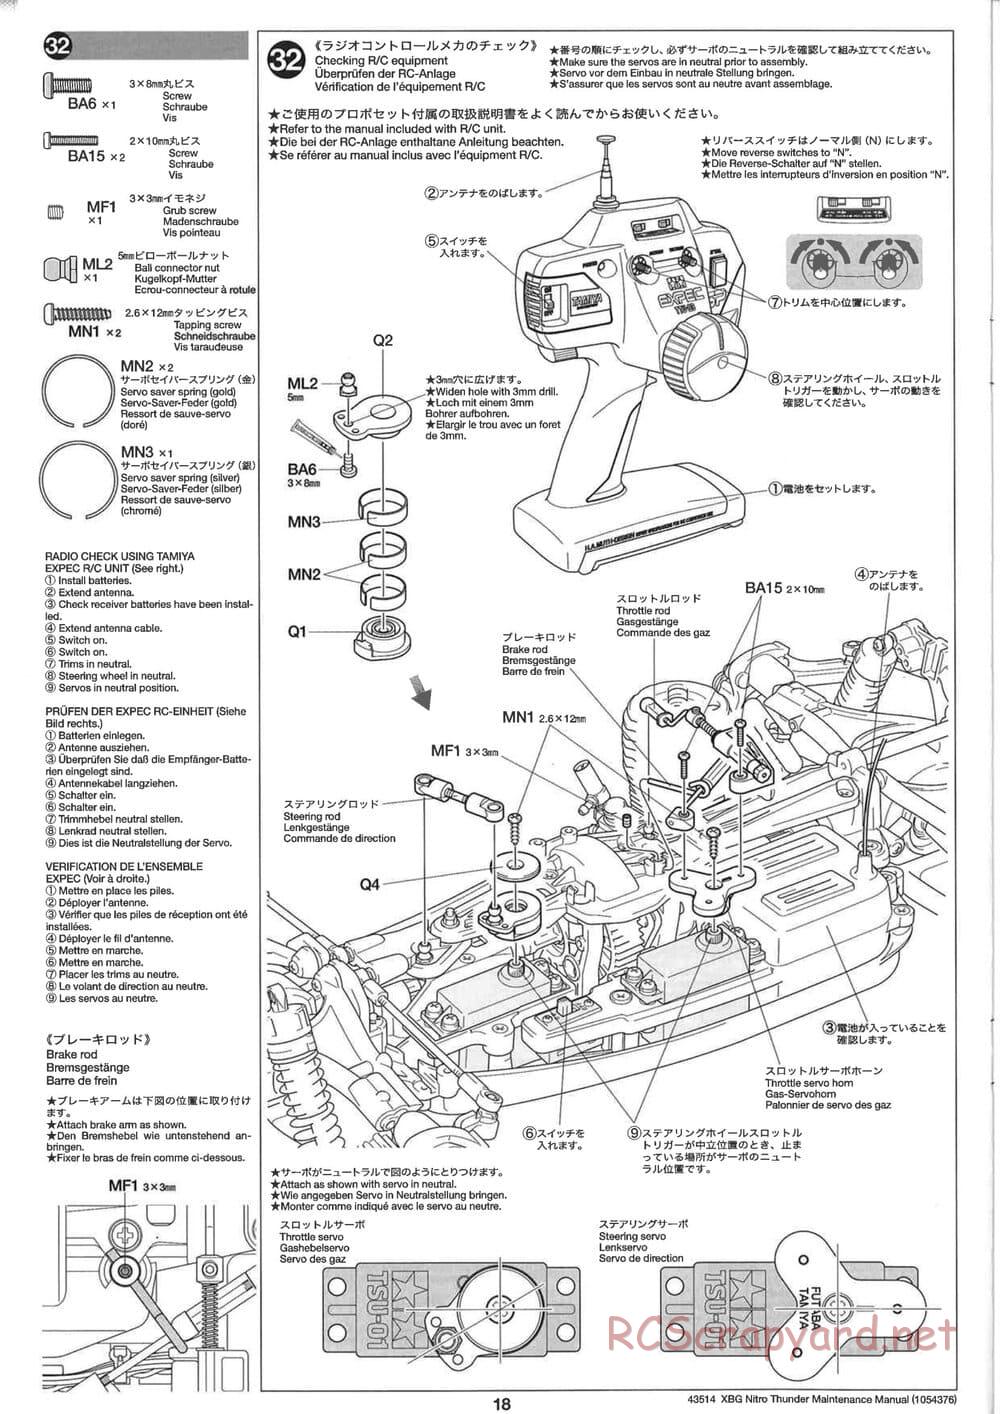 Tamiya - Nitro Thunder - NDF-01 Chassis - Manual - Page 18